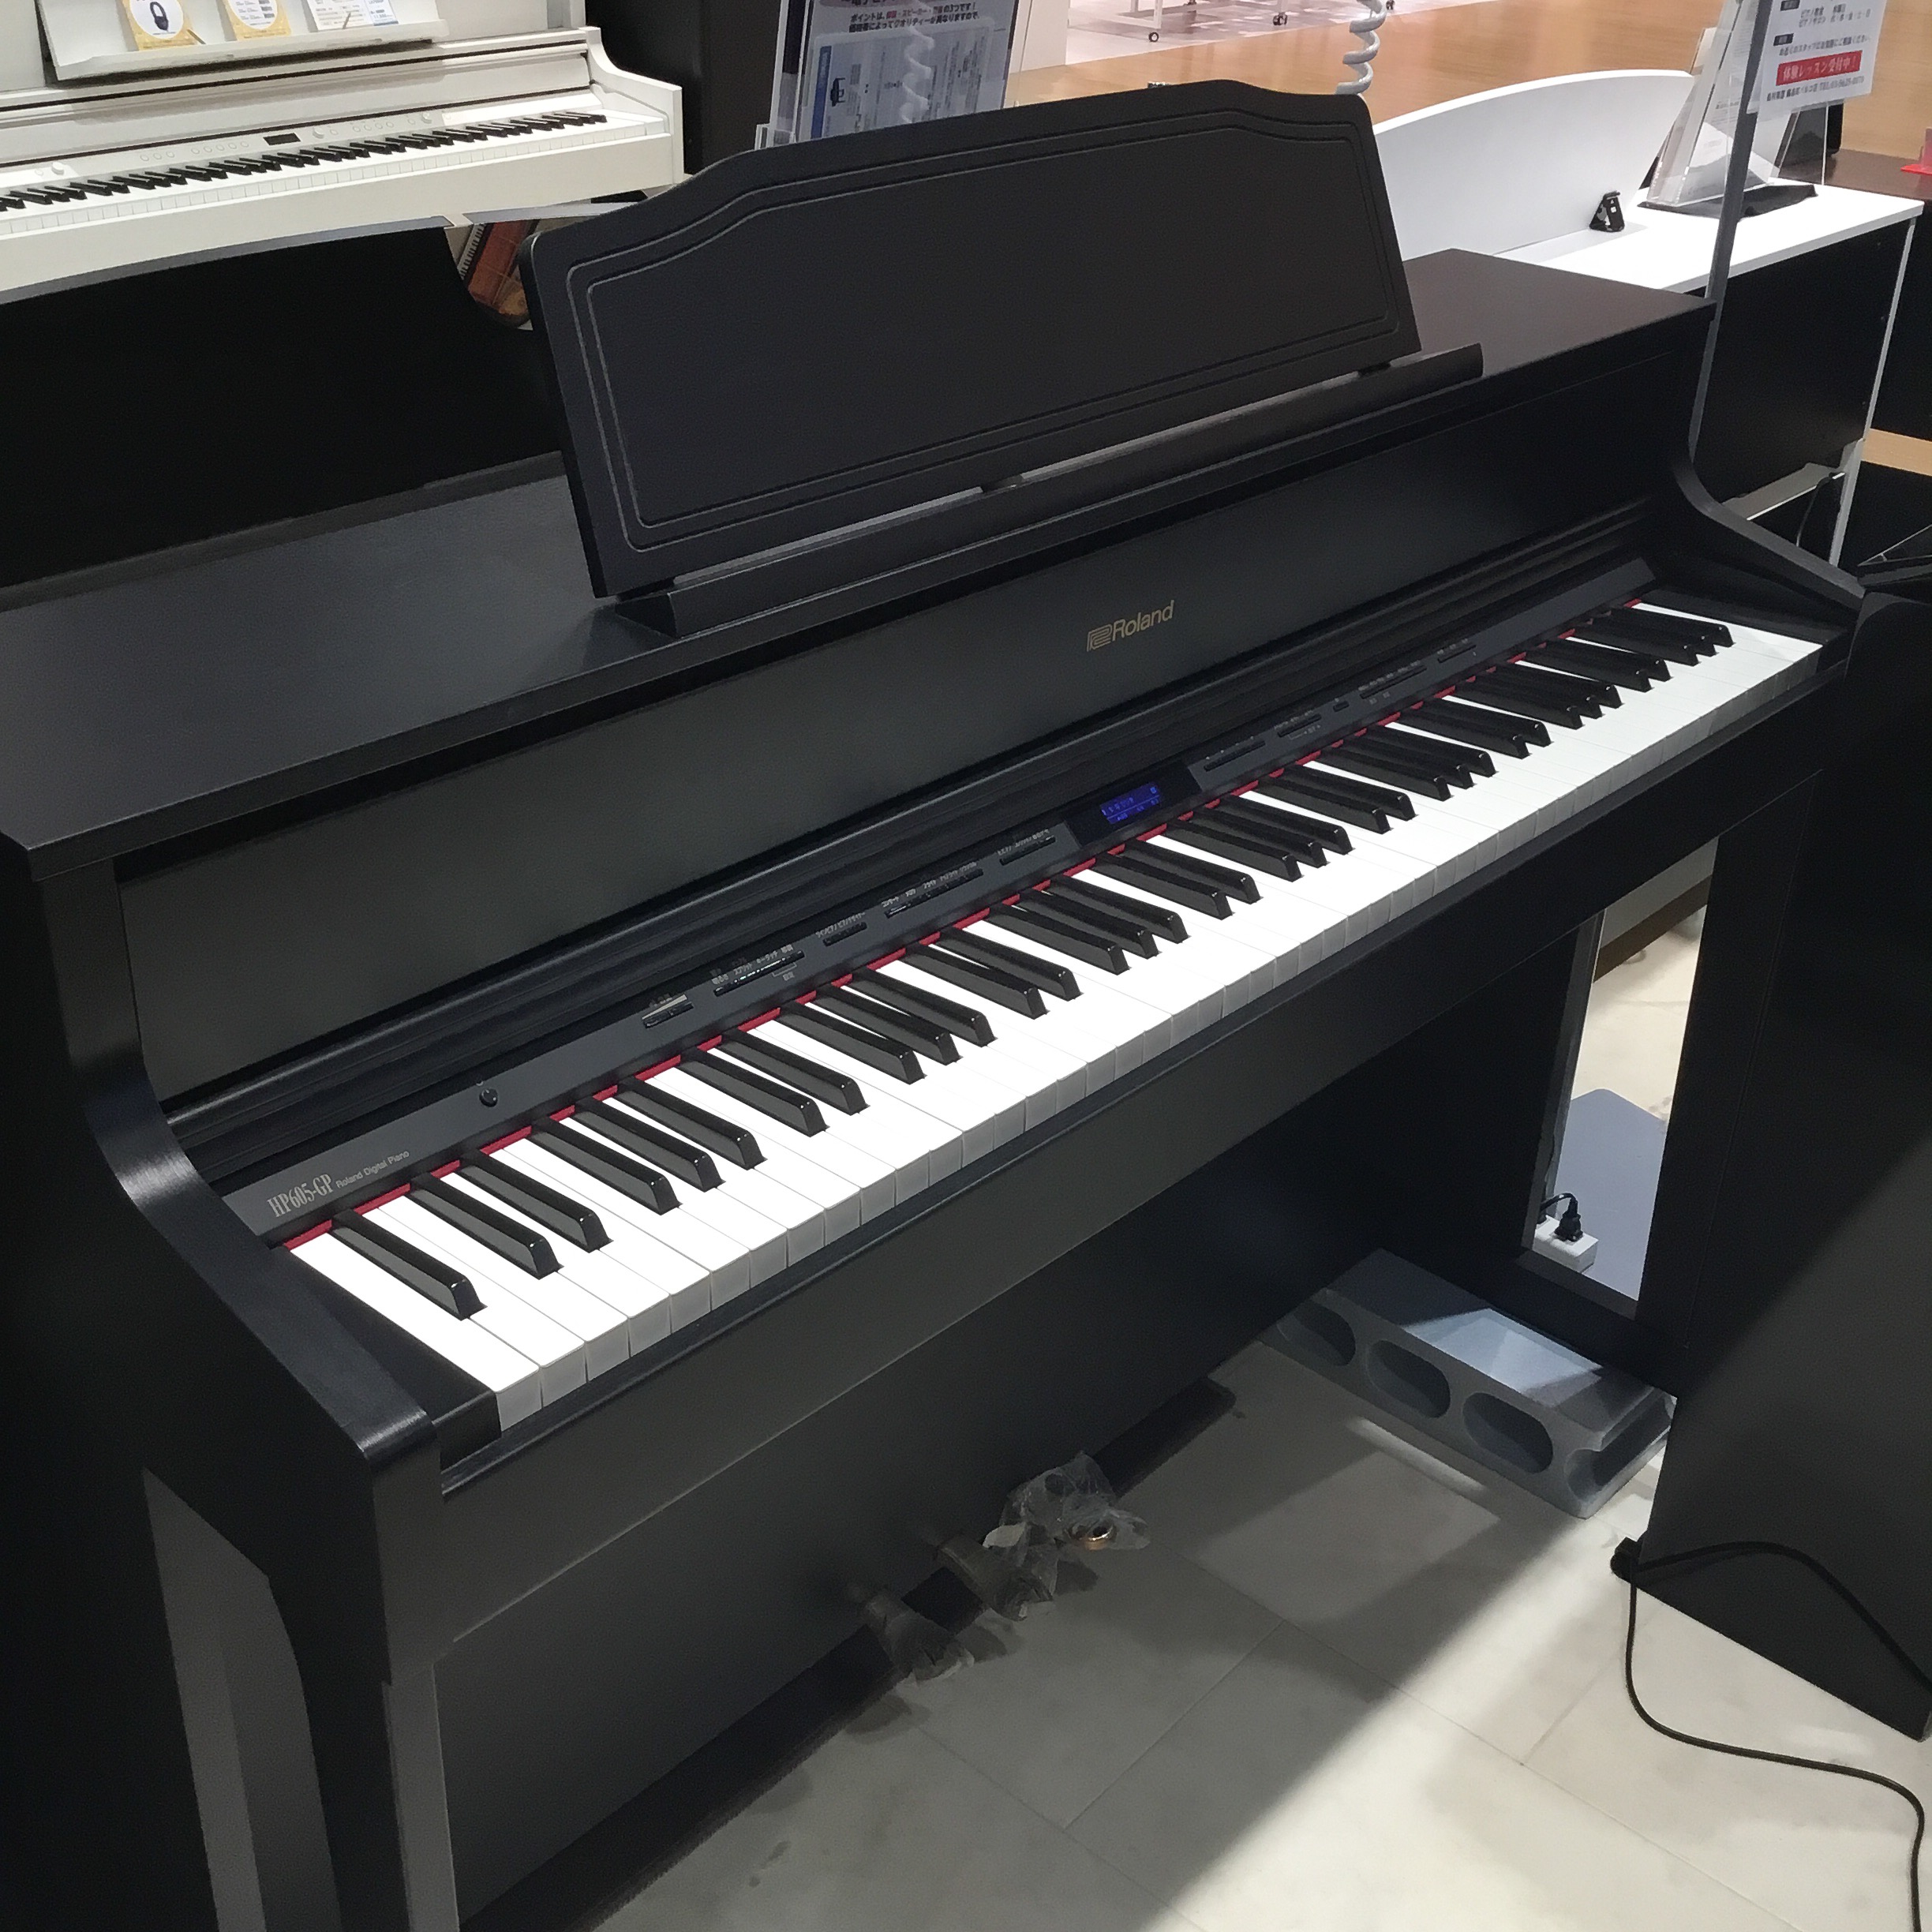 2015年製の電子ピアノですRoland ローランド HP-605 電子ピアノ - 鍵盤楽器